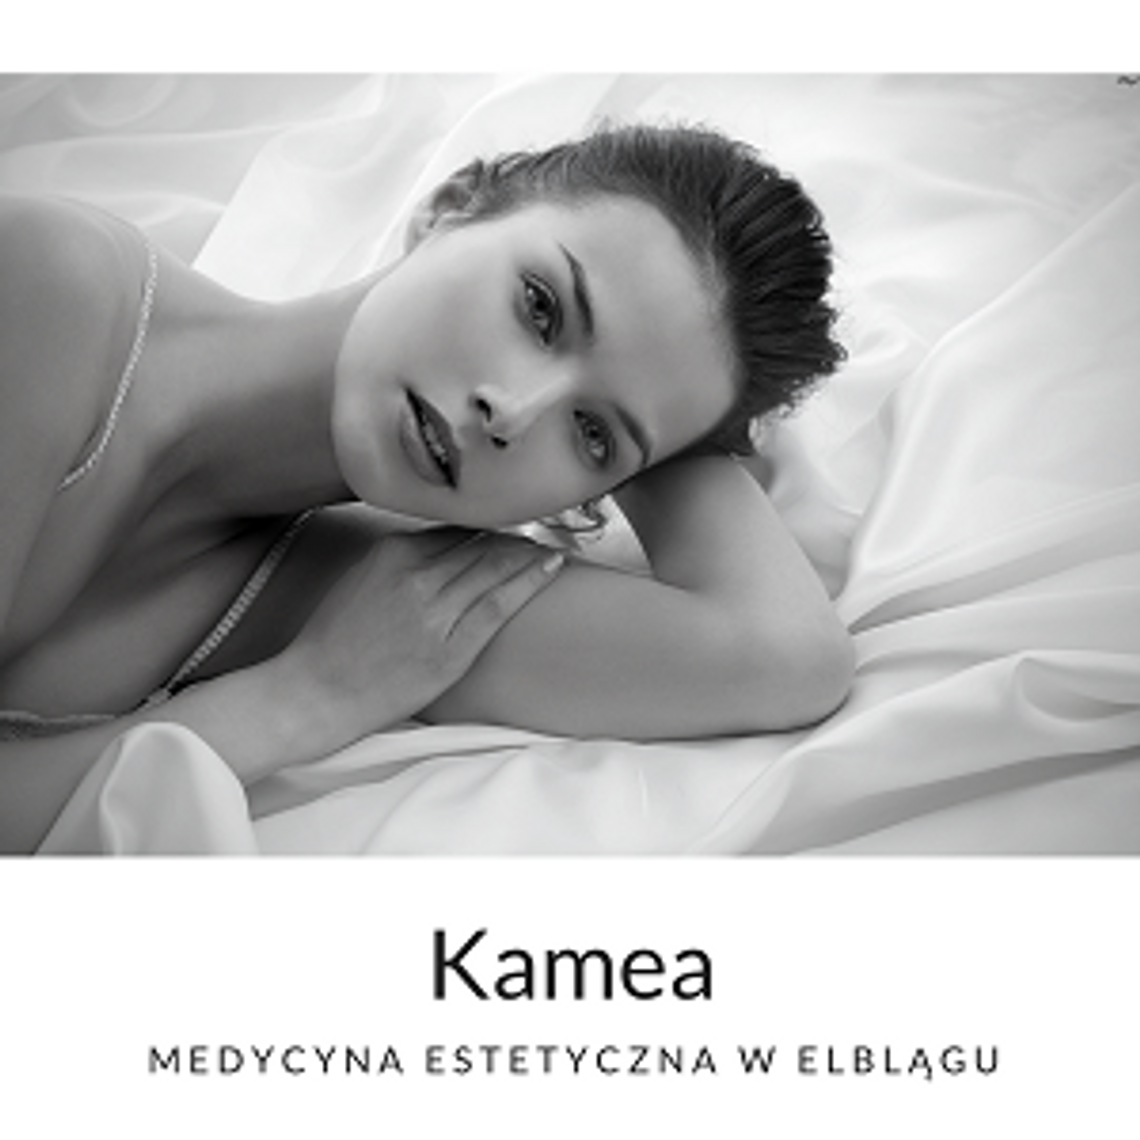 KAMEA - medycyna estetyczna w Elblągu